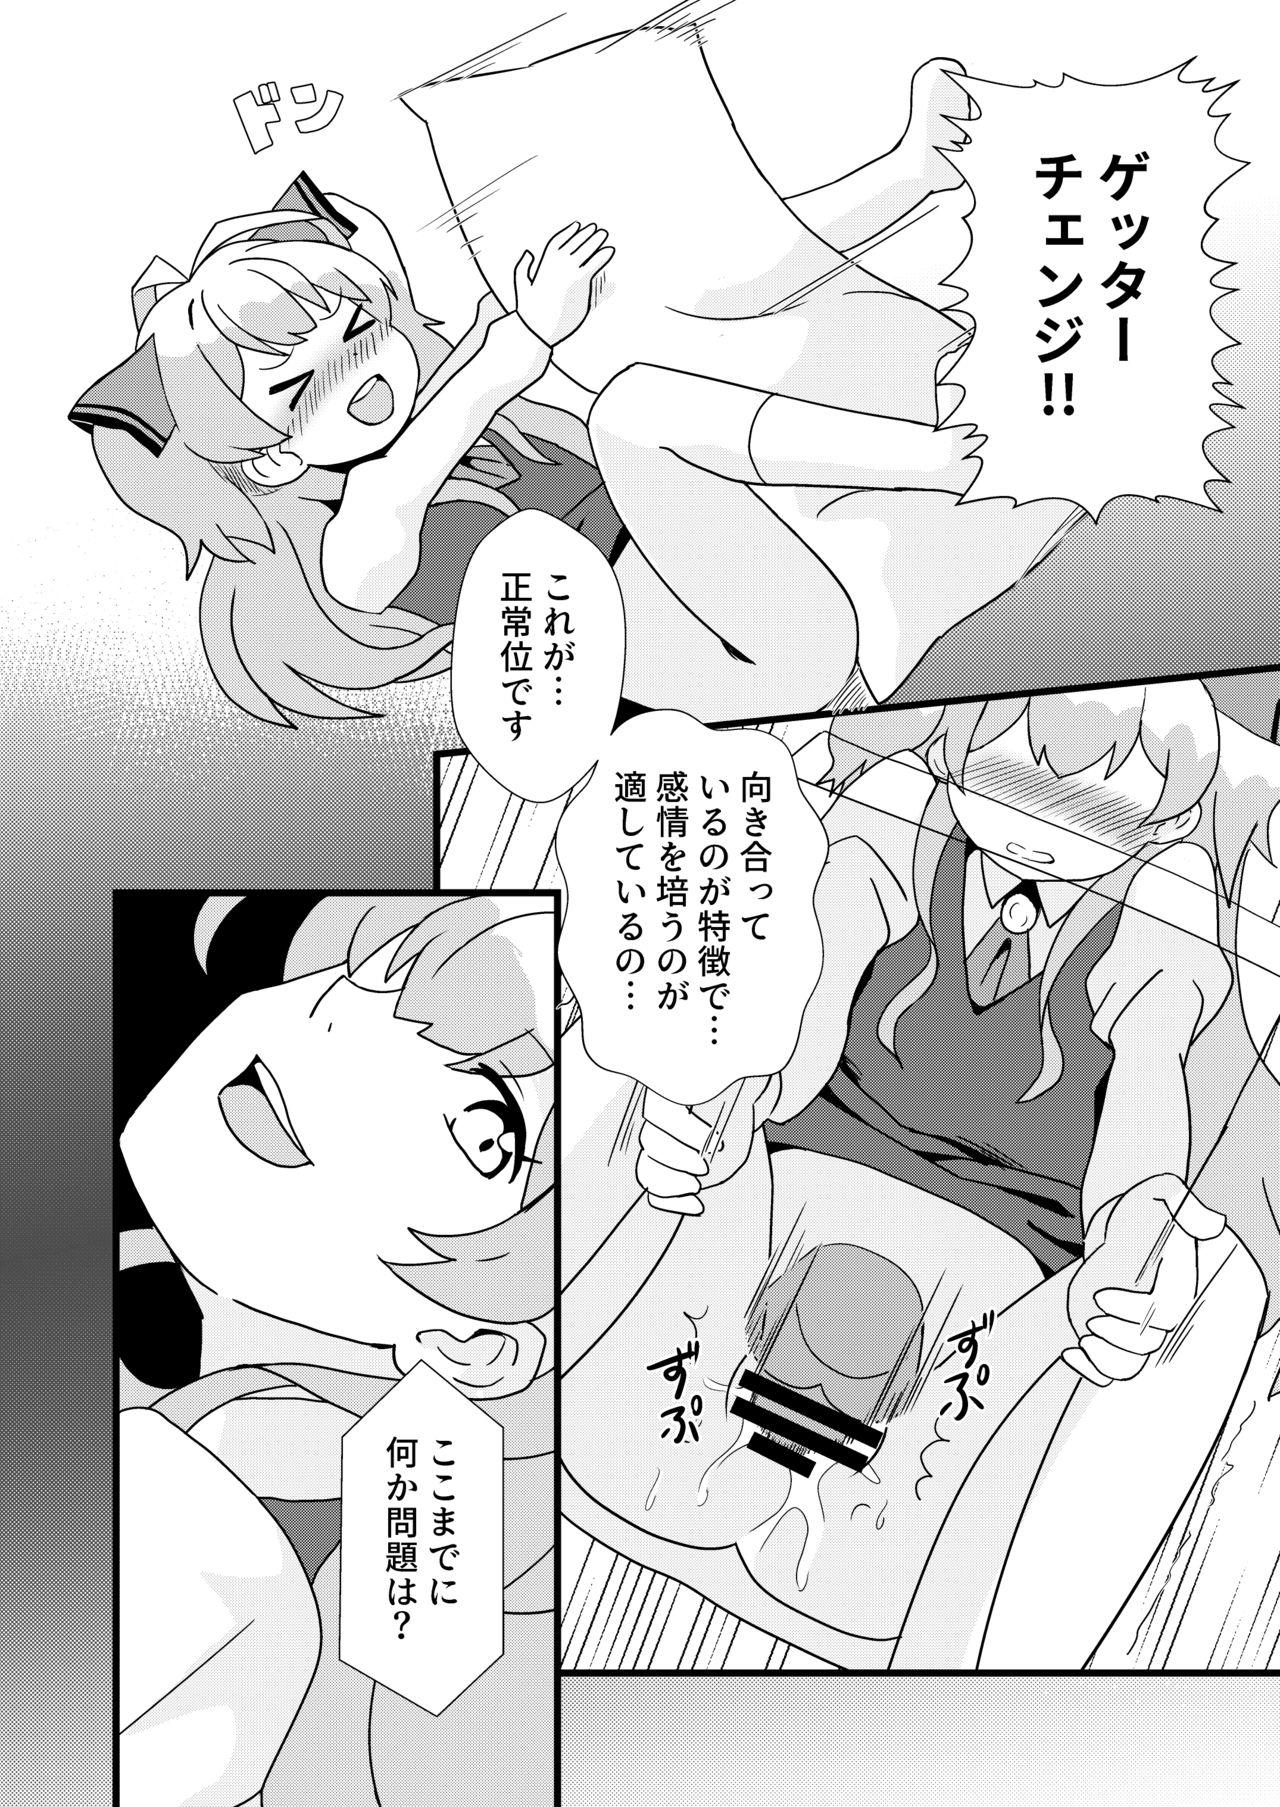 Oral Sex Porn Watashi, Seiyoku wa Heikinchi de tte Itta yo ne! - Watashi nouryoku wa heikinchi de tte itta yo ne Camgirls - Page 11